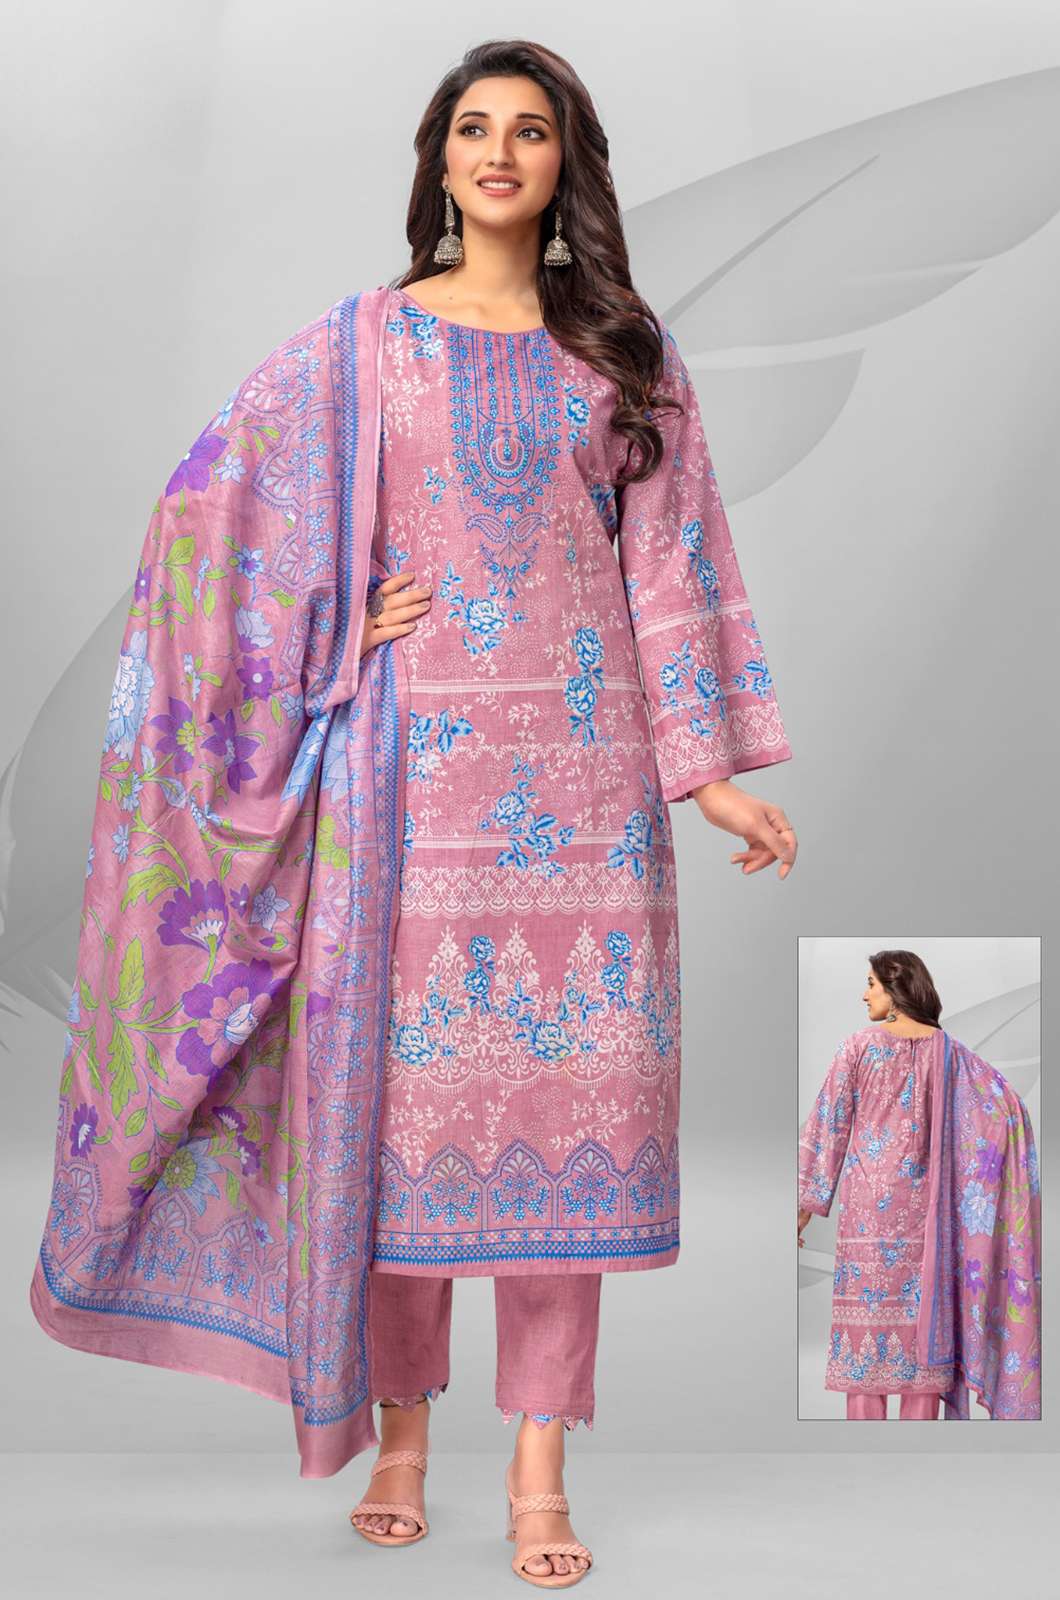 Shri Balaji Emporium Roohi Zara Vol.2 5976 100% Pure Cotton Printed Suit